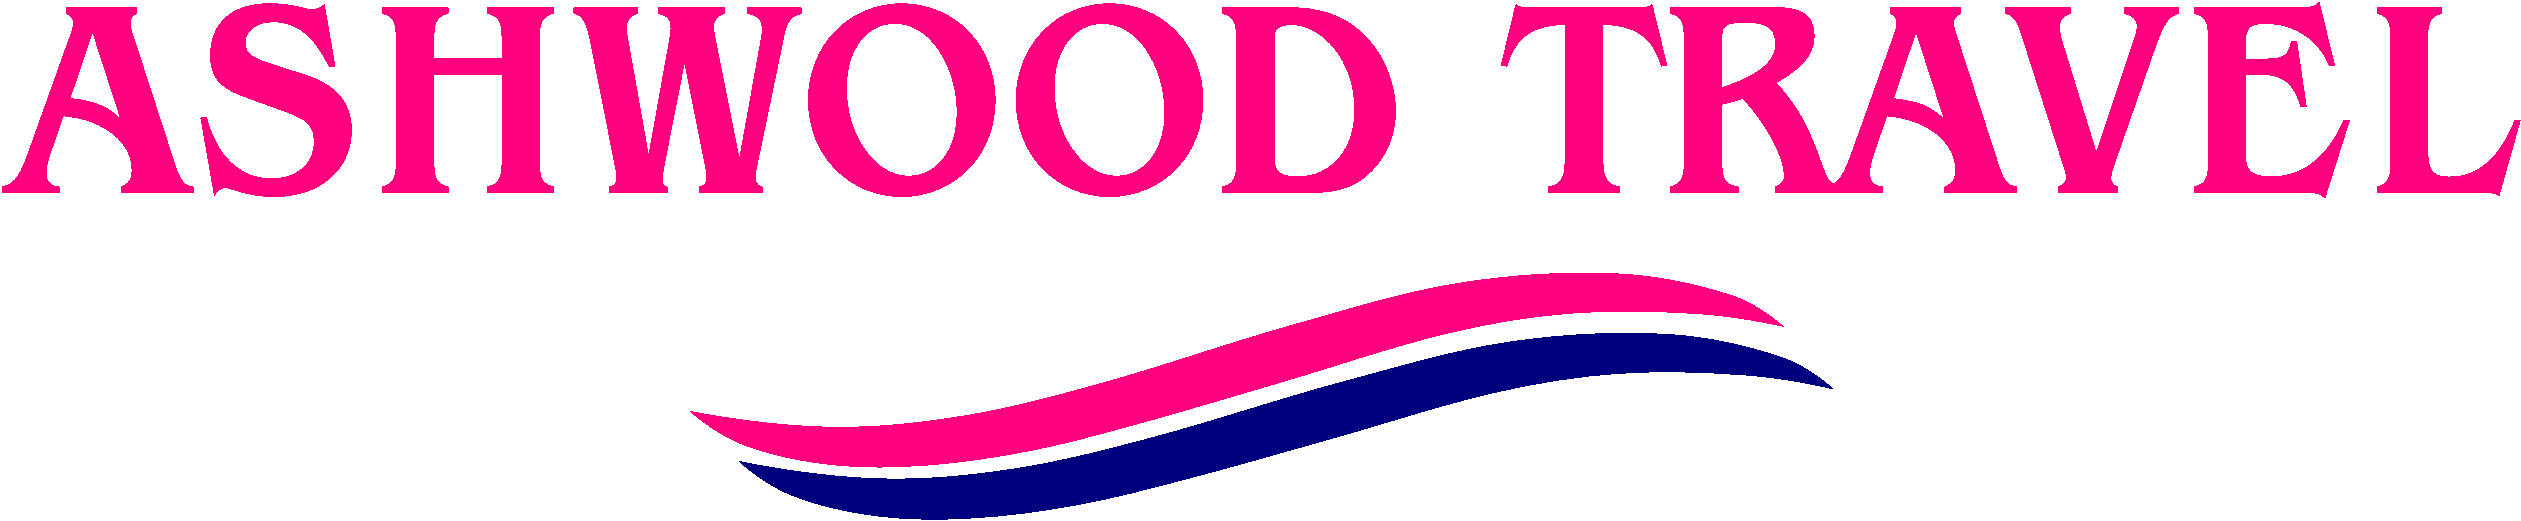 ashwood travel logo